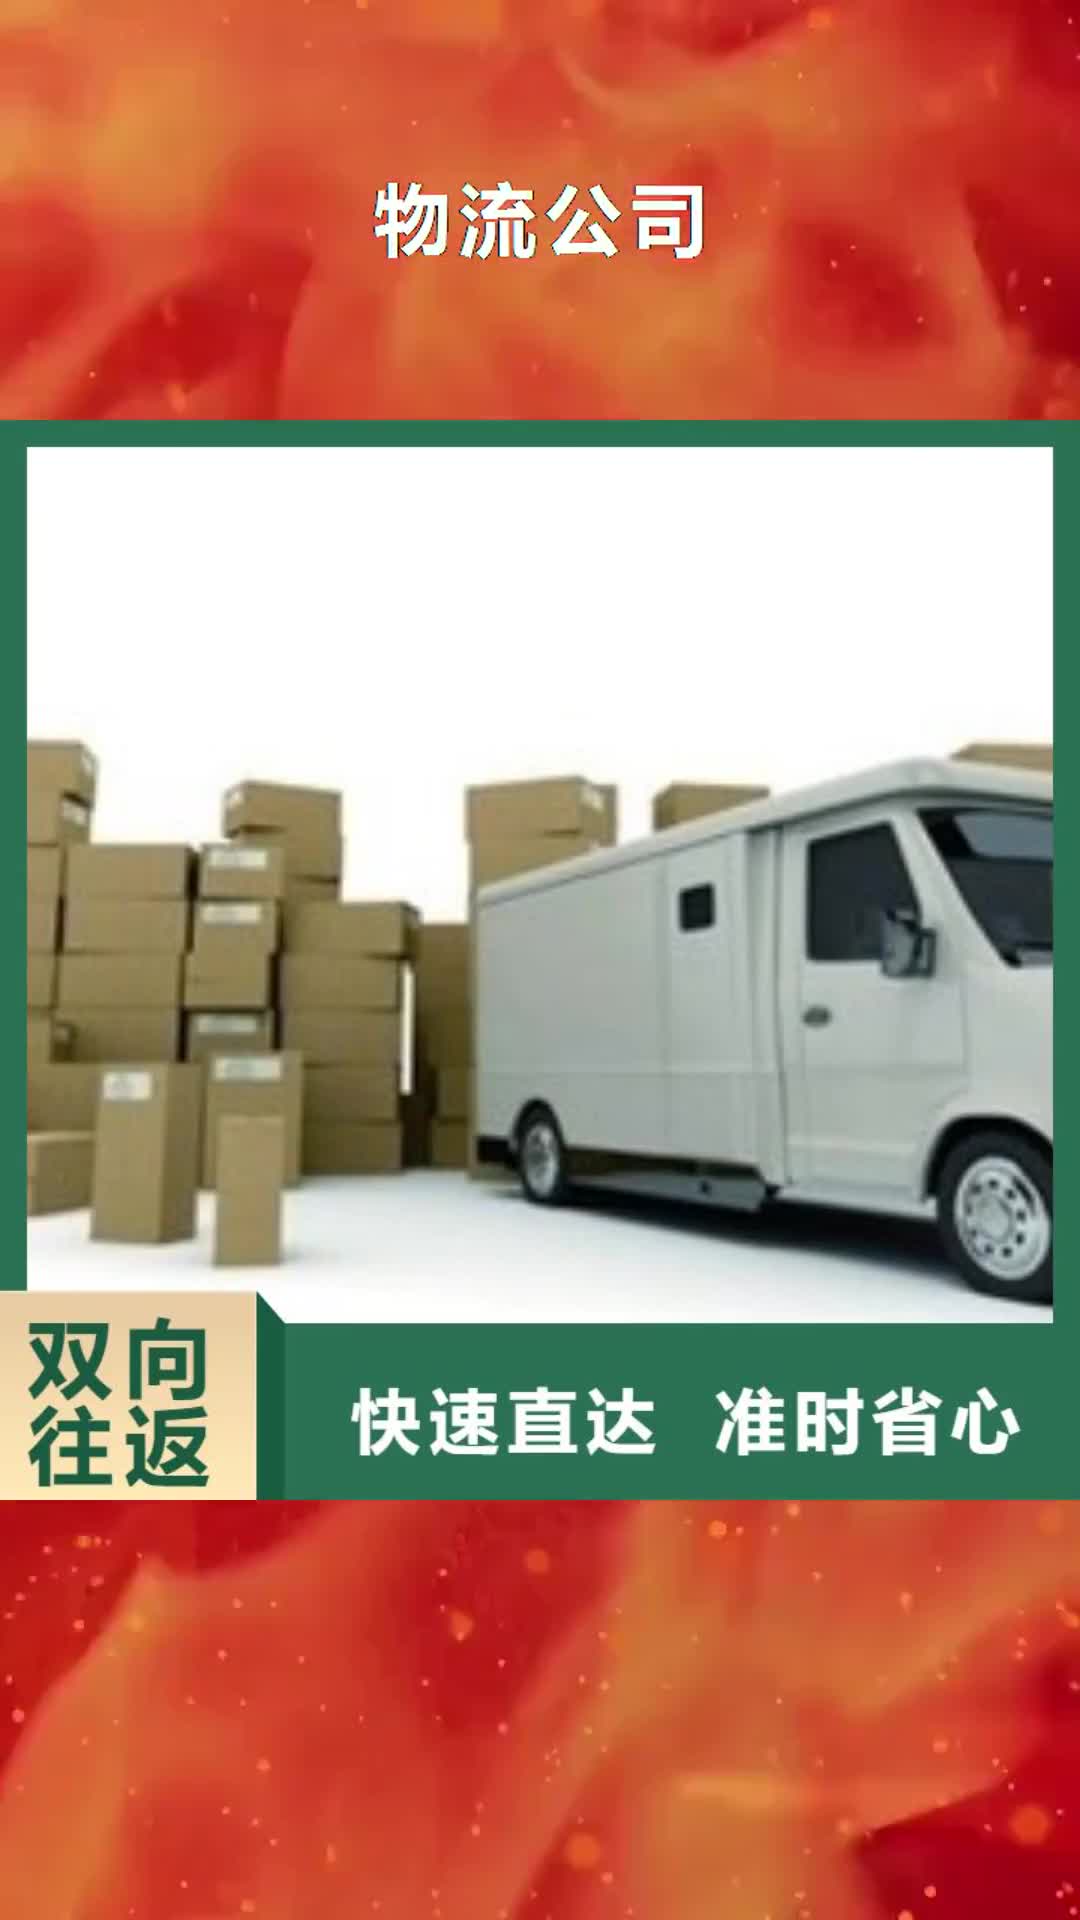 天水【物流公司】,杭州到天水专线公司运输物流返空车零担回头车搬家点到点配送